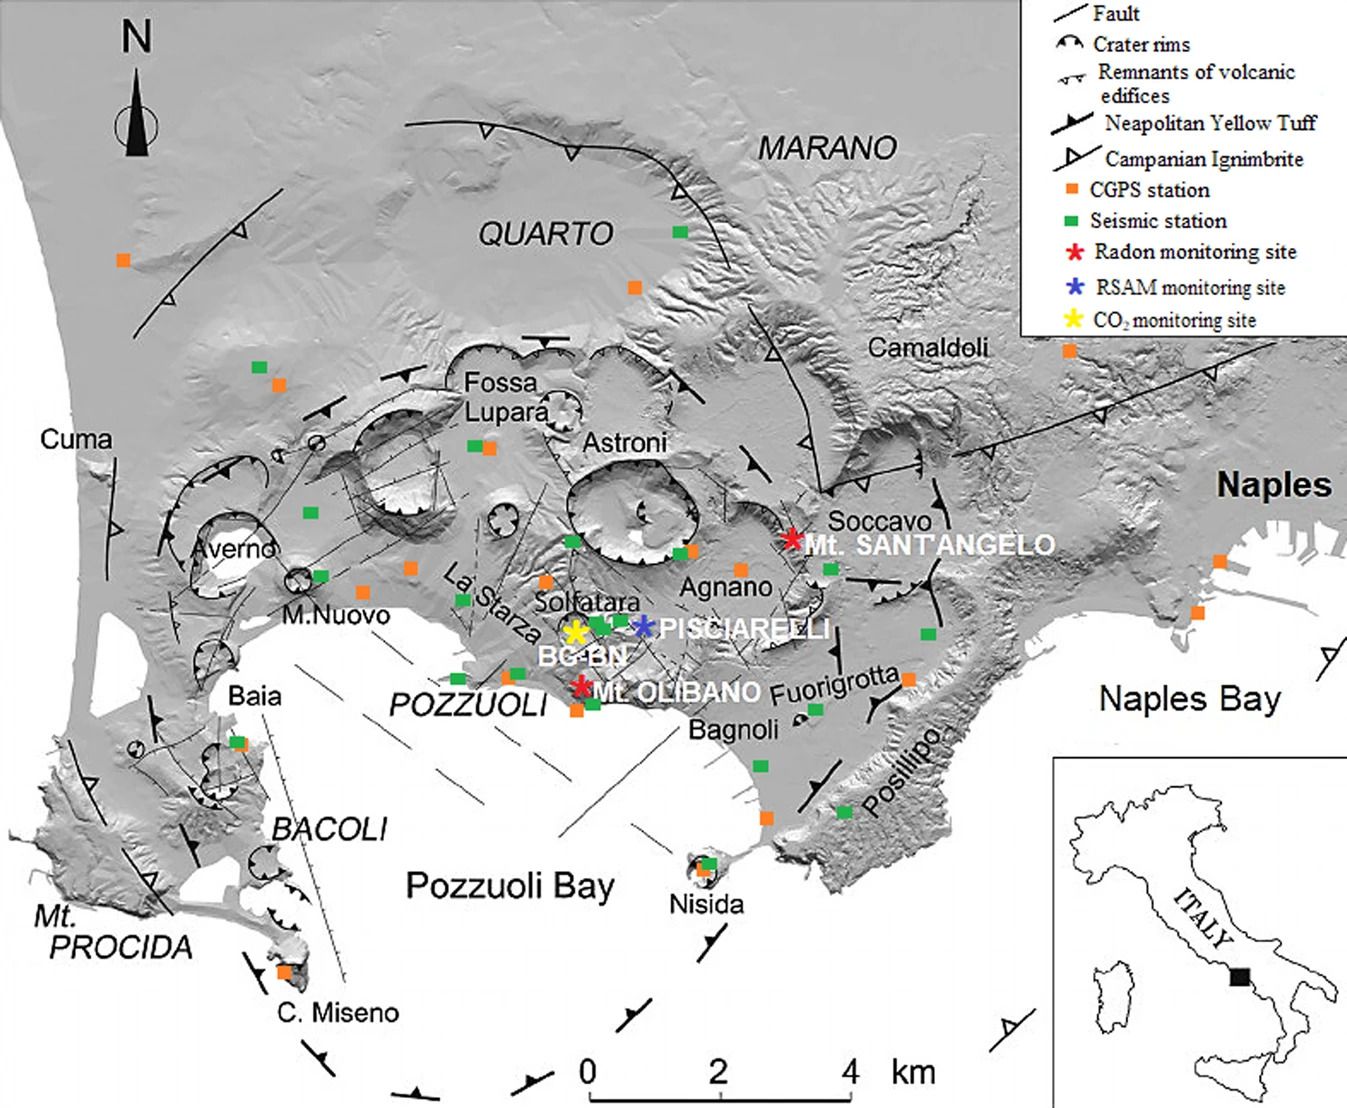 Carte de la caldeira Campi Flegrei (Naples-Italie). La carte, modifiée après 16 (10.1016 / j.apradiso.2020.109140) à l'aide de PAINT (Microsoft Corporation, version: 6.1907.18017.0), montre le cadre structurel de la caldeira caractérisé par la tectonique et l'activité volcano-tectonique. Les deux sites de surveillance du radon de Monte Olibano et Monte Sant’Angelo, et les autres sites de surveillance des paramètres géochimiques et géophysiques sont signalés. Les carrés représentent le réseau sismique Campi Flegrei en vert et le réseau NeVoCGPS en orange